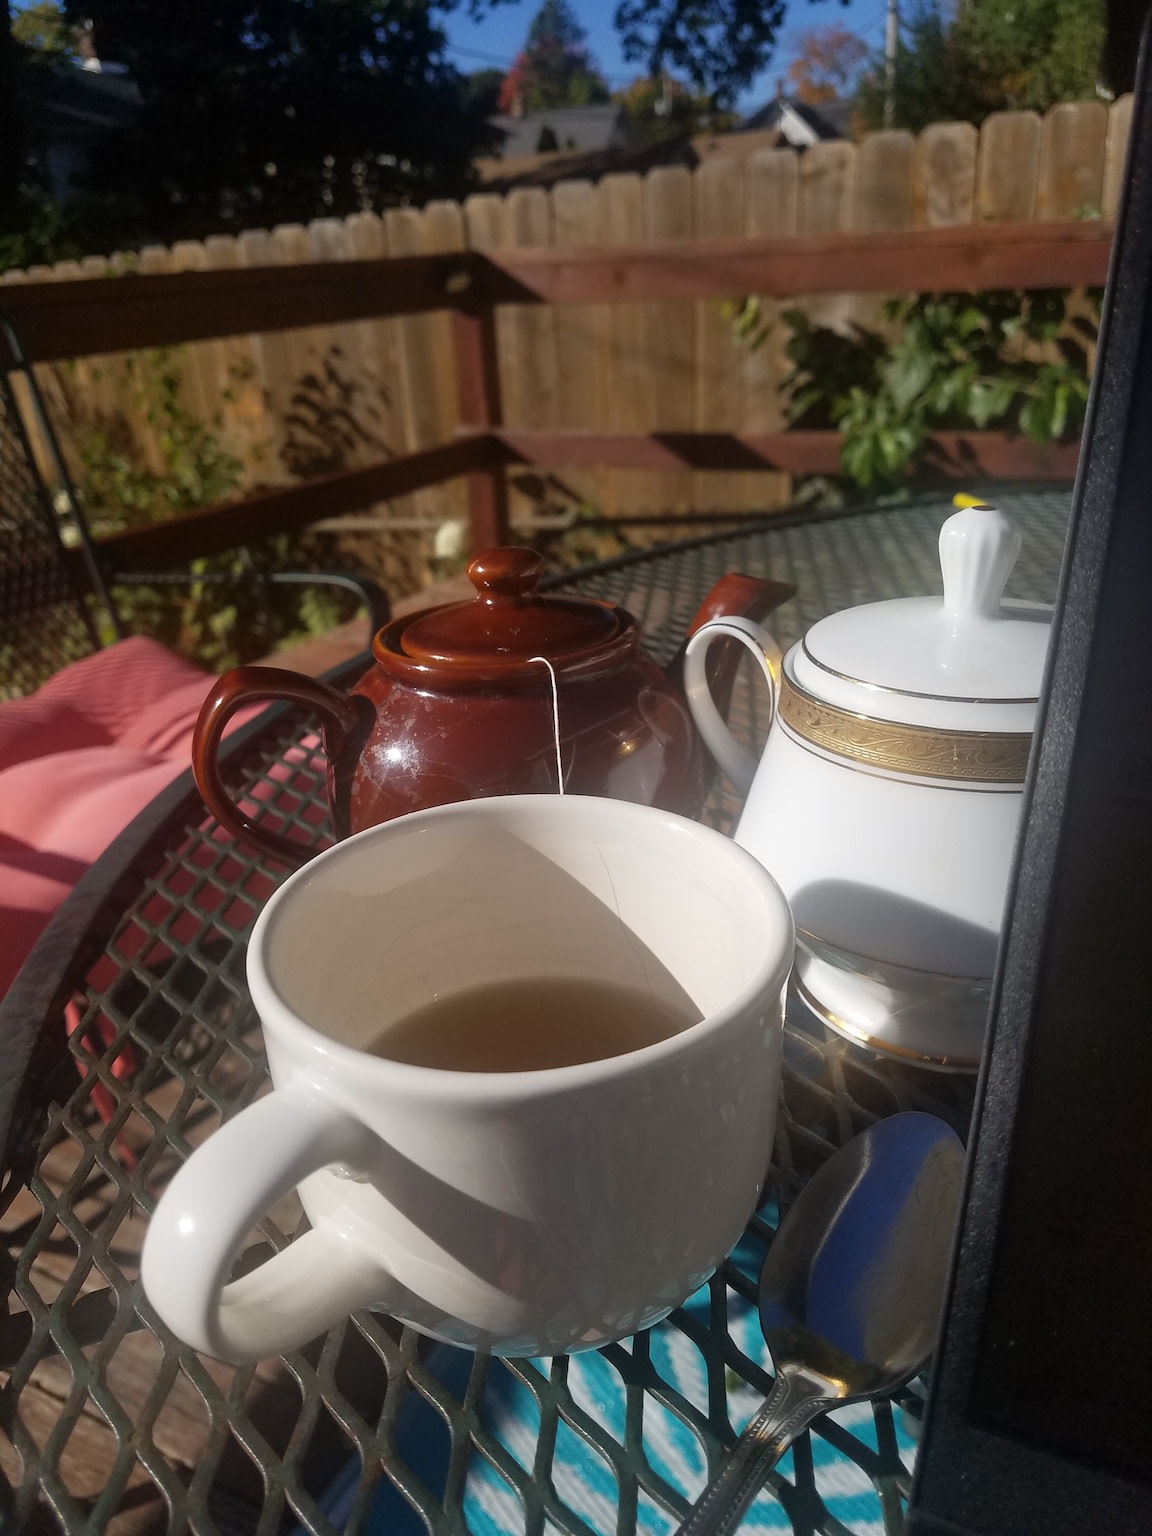 A teapot in the sun